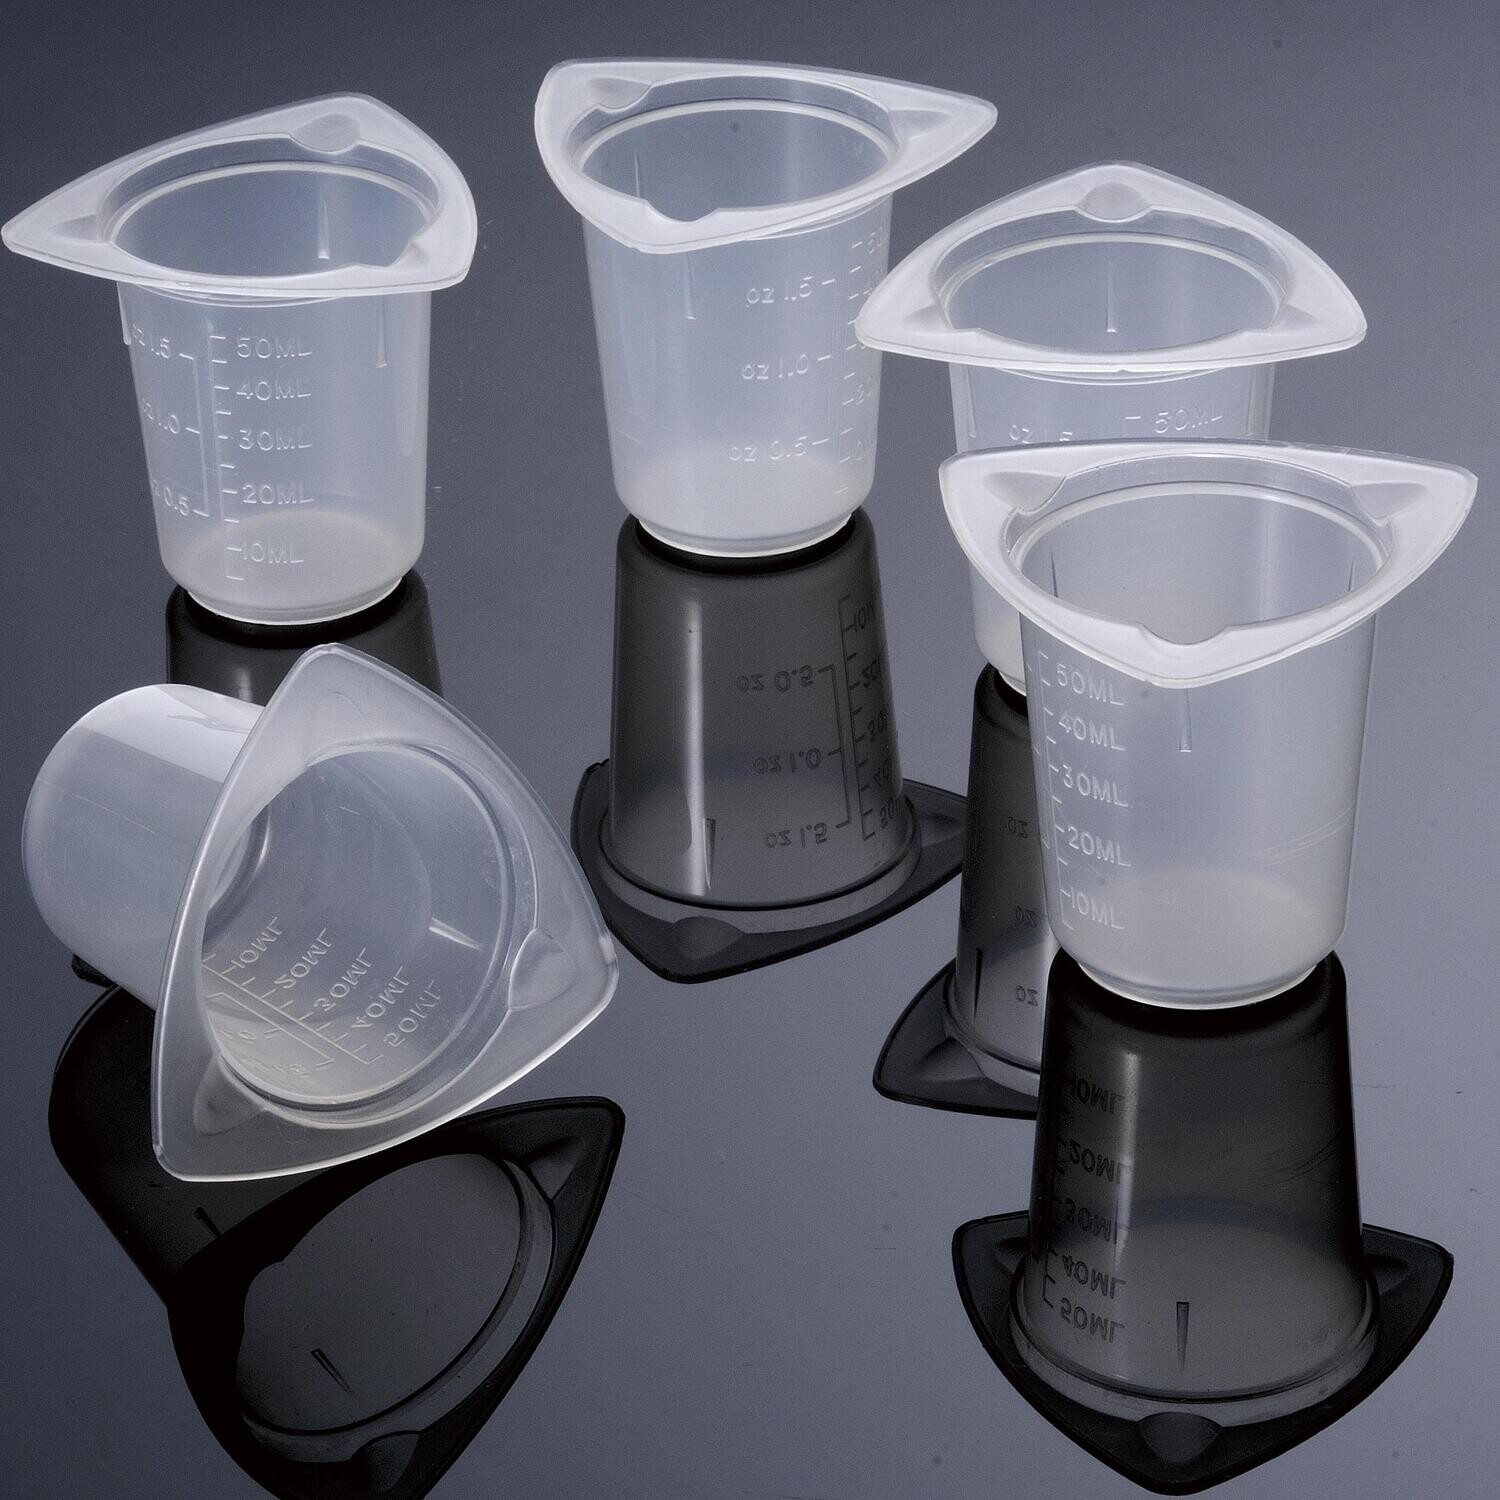 Biologix Beakers-PP, Three Pour Spouts, Disposable, Case of 100 pcs